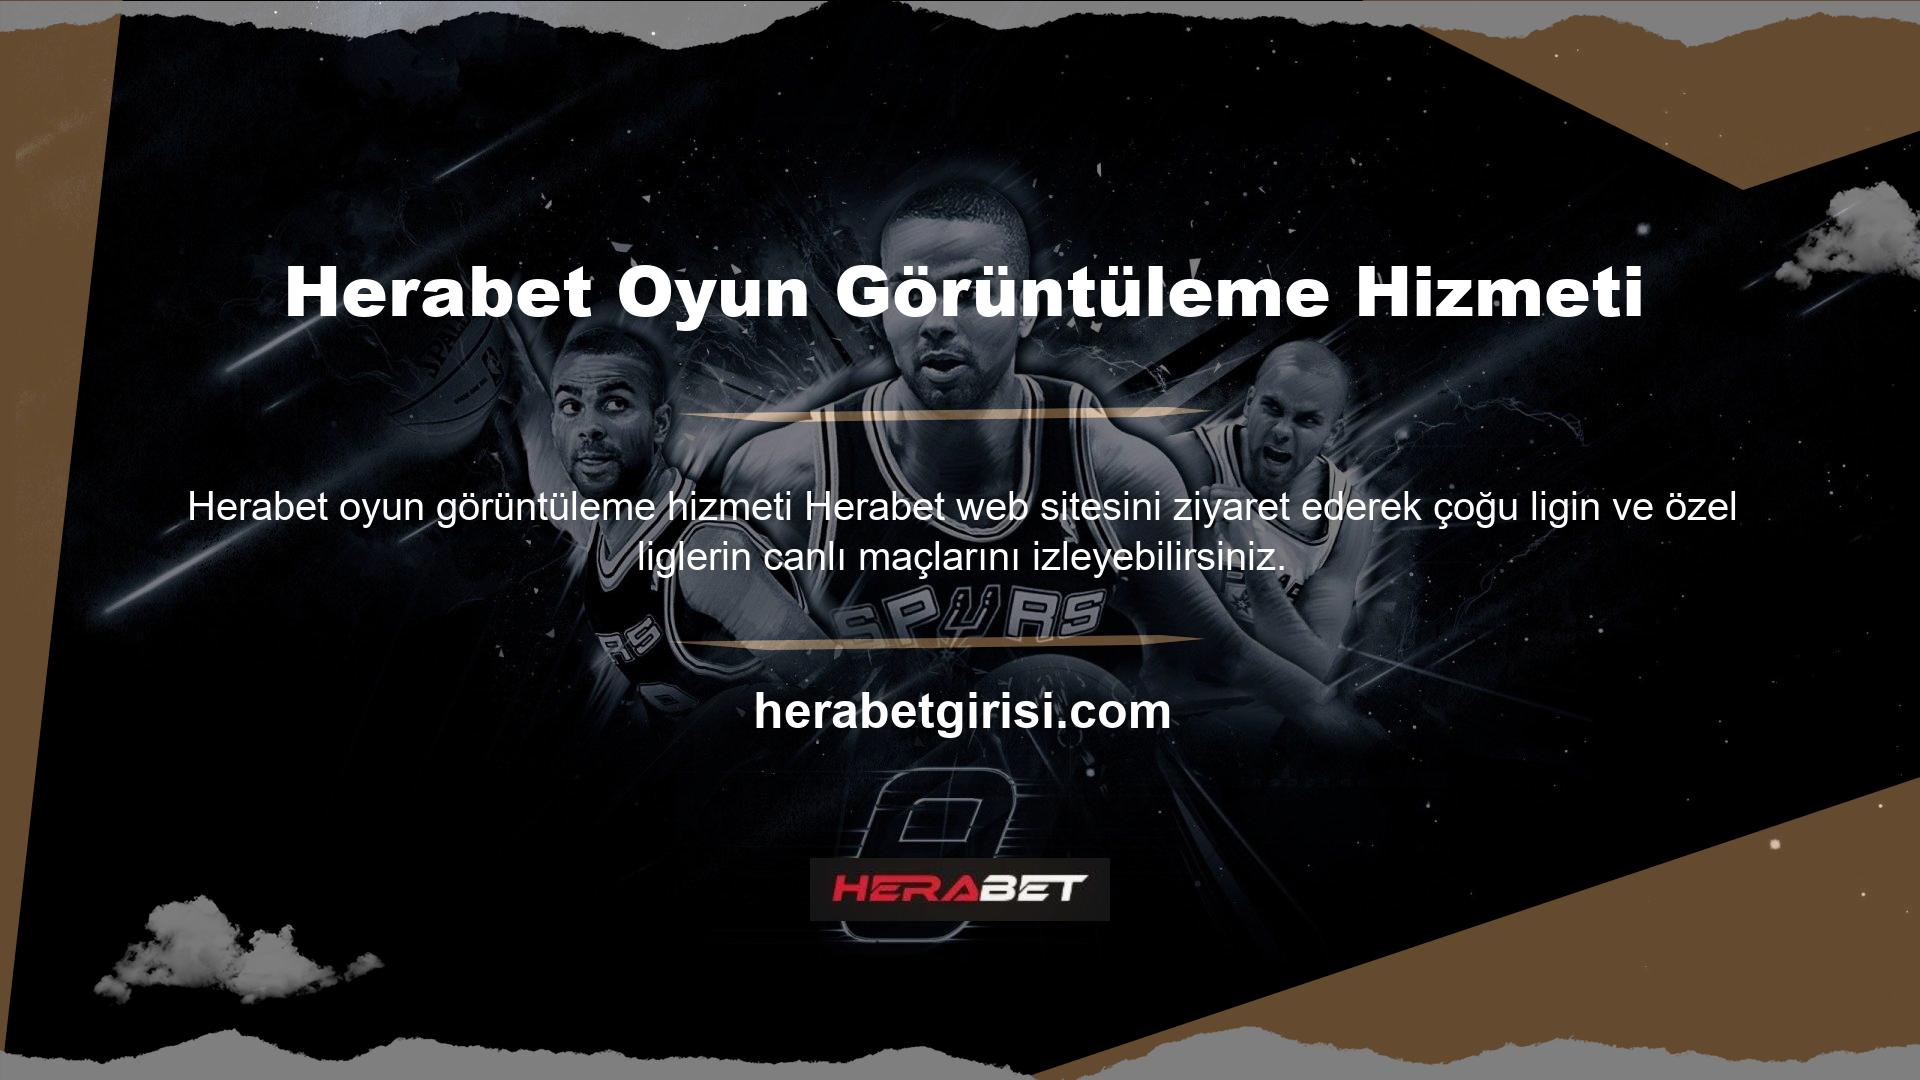 Herabet Twitter hesabı, Türkiye Şampiyonlar Ligi maçlarının tamamını canlı olarak kesintisiz ve ücretsiz olarak izleyebileceklerini paylaştı